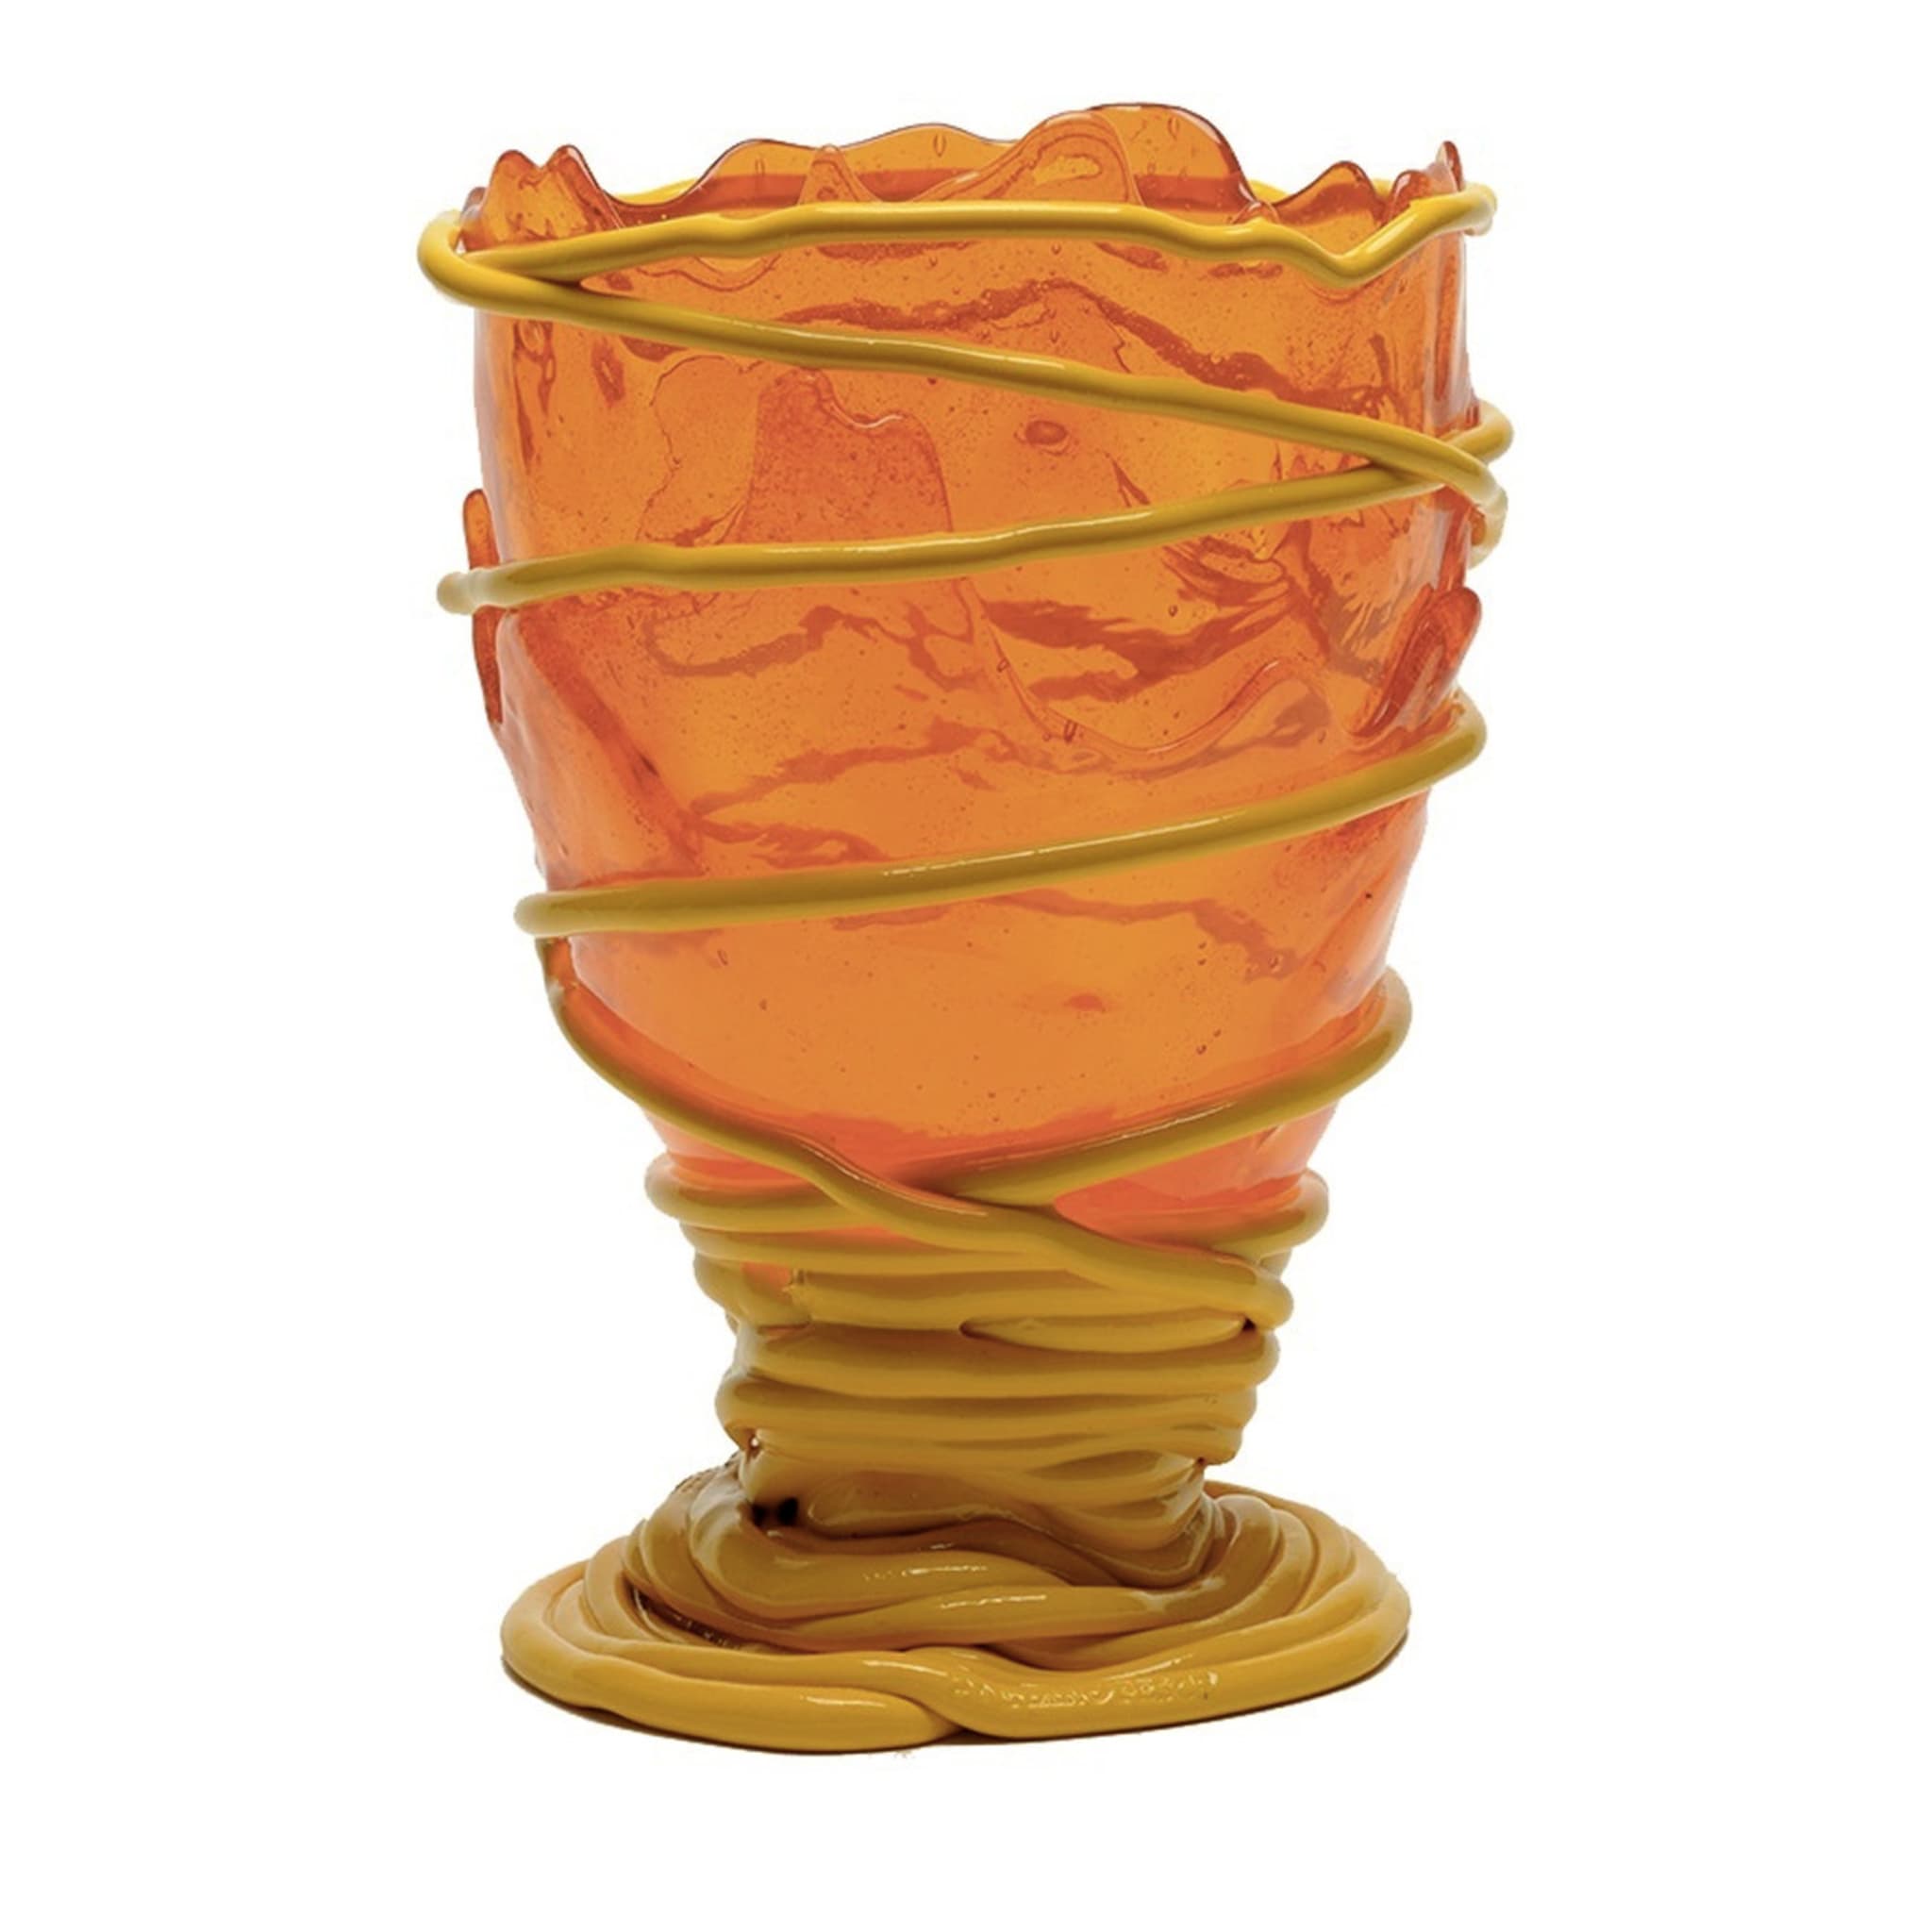 Vase moyen orange et jaune Pompitu II de Gaetano Pesce - Vue principale